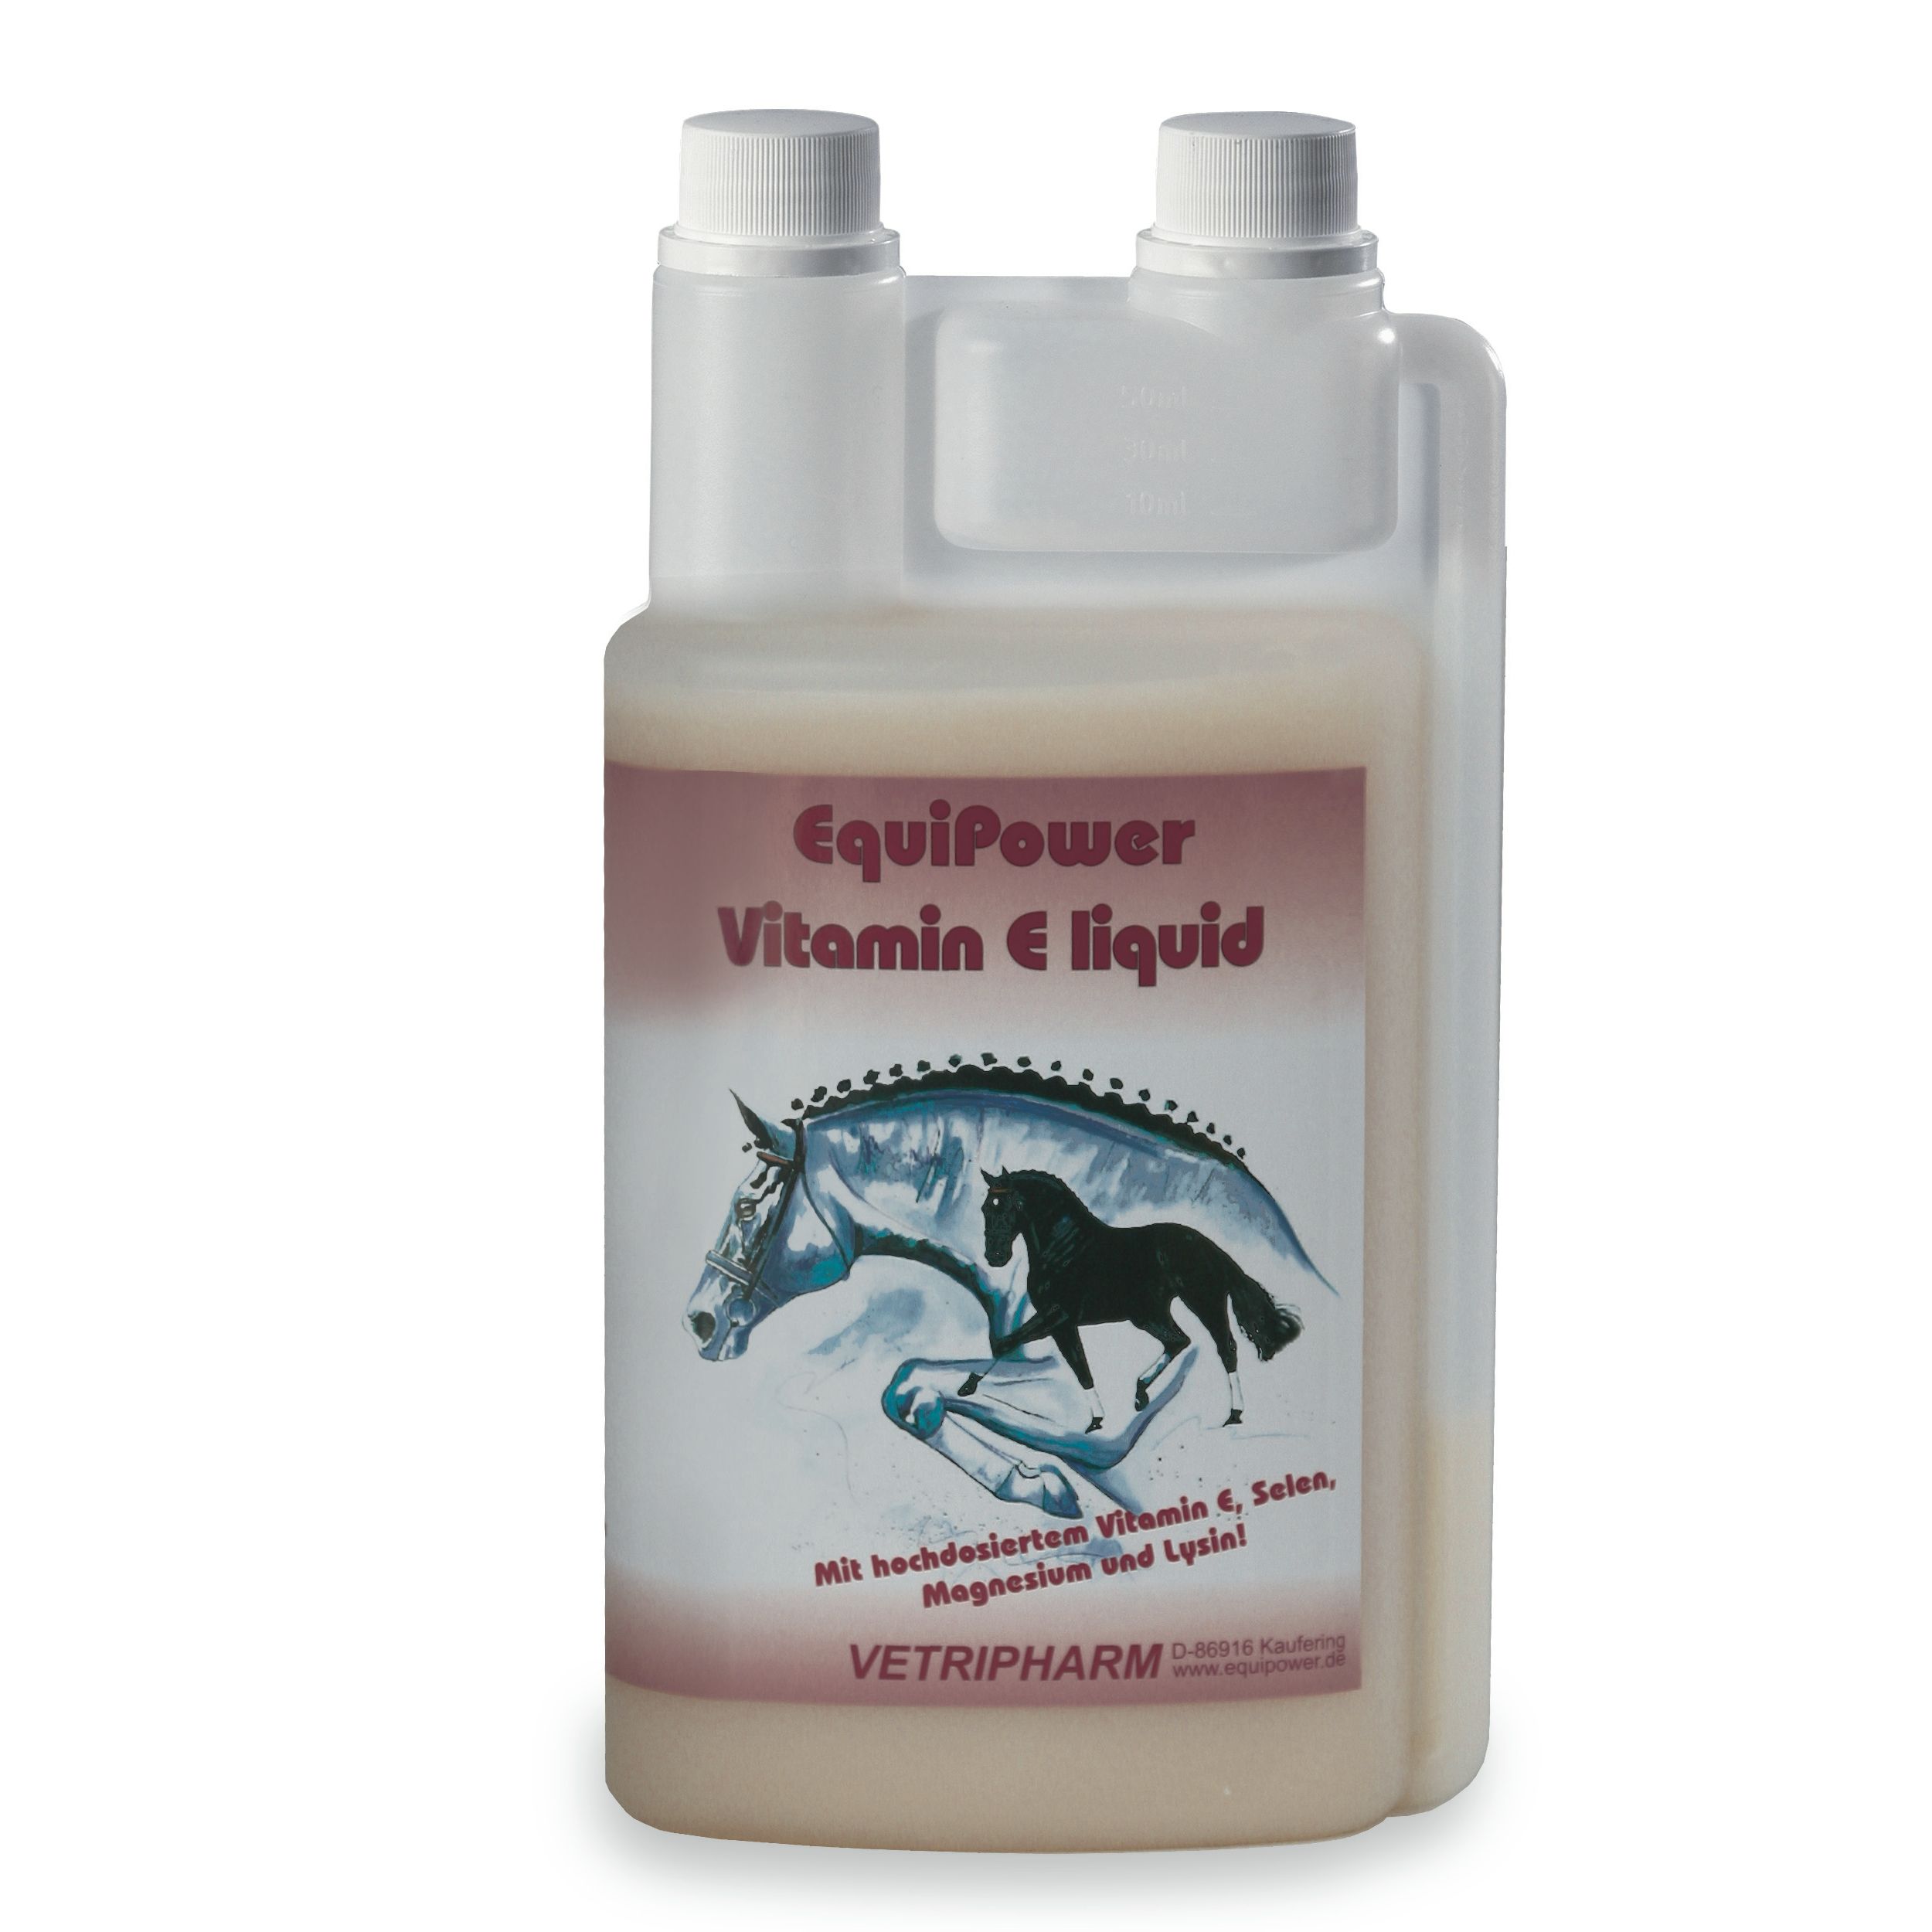 Vetripharm EquiPower Vitamin E liquid 1000 ml Flasche